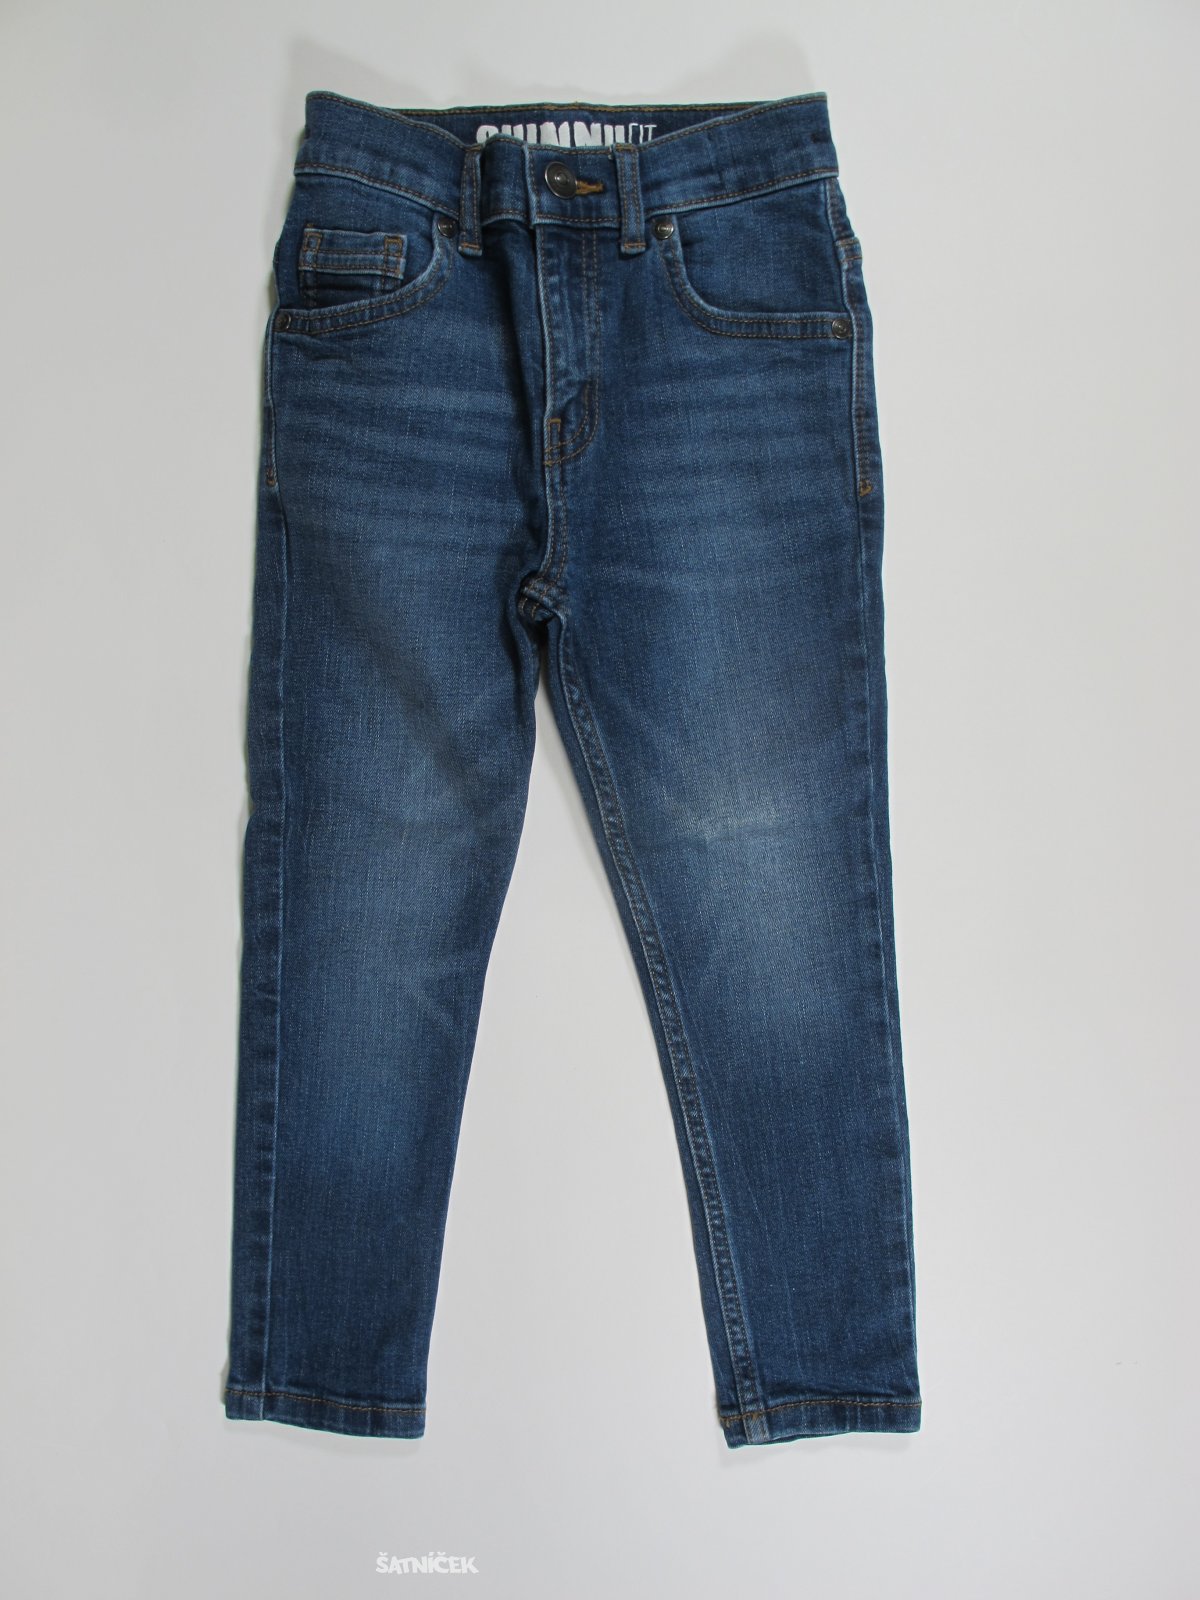 Modré džínové kalhoty